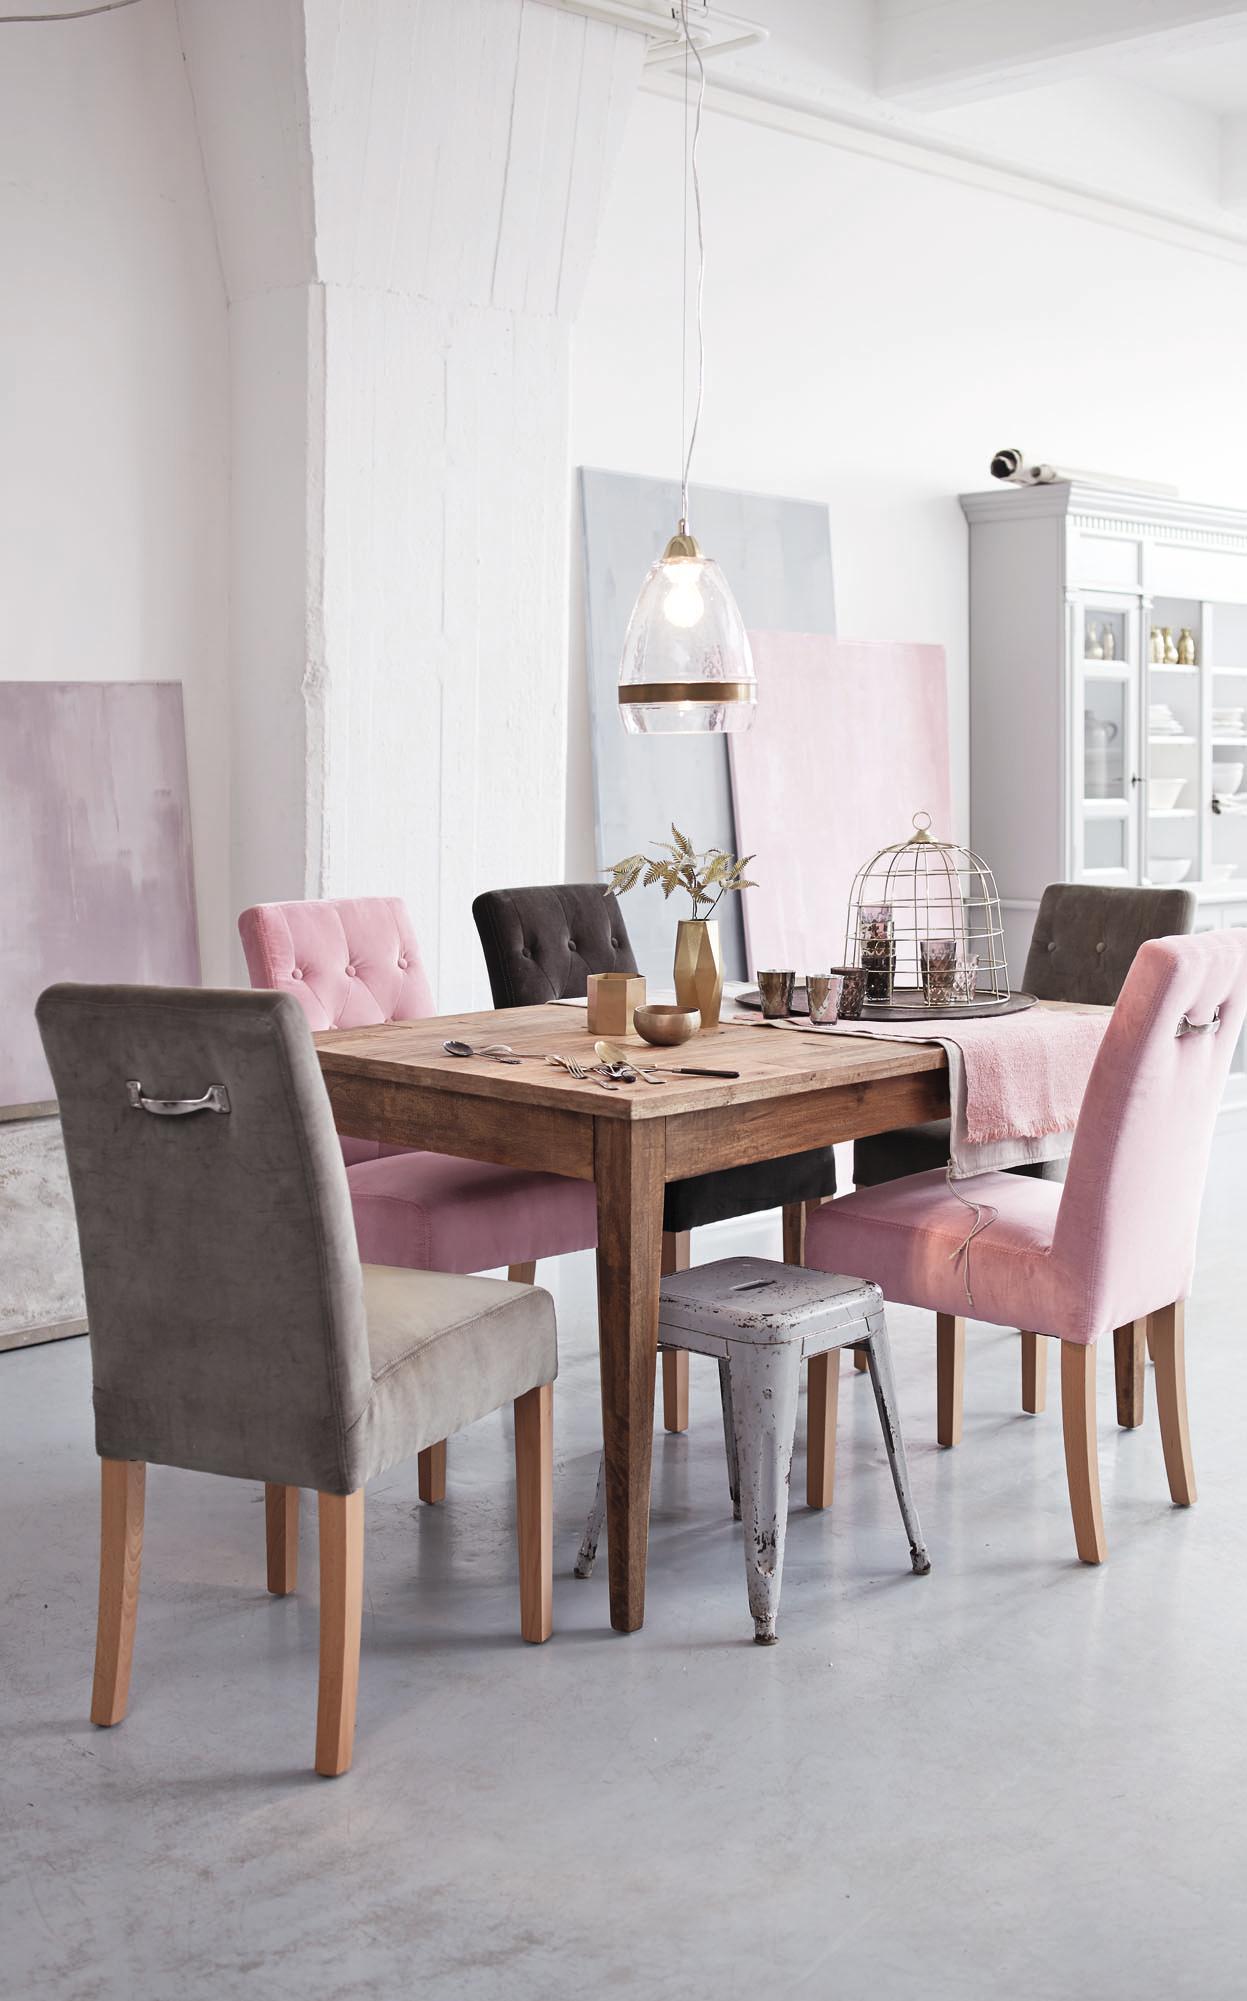 Kombiniert: Stühle in Rosa und Grau #stuhl #hocker #holztisch #esstisch #pendelleuchte #tisch #rosafarbenerstuhl #zimmergestaltung ©Impressionen